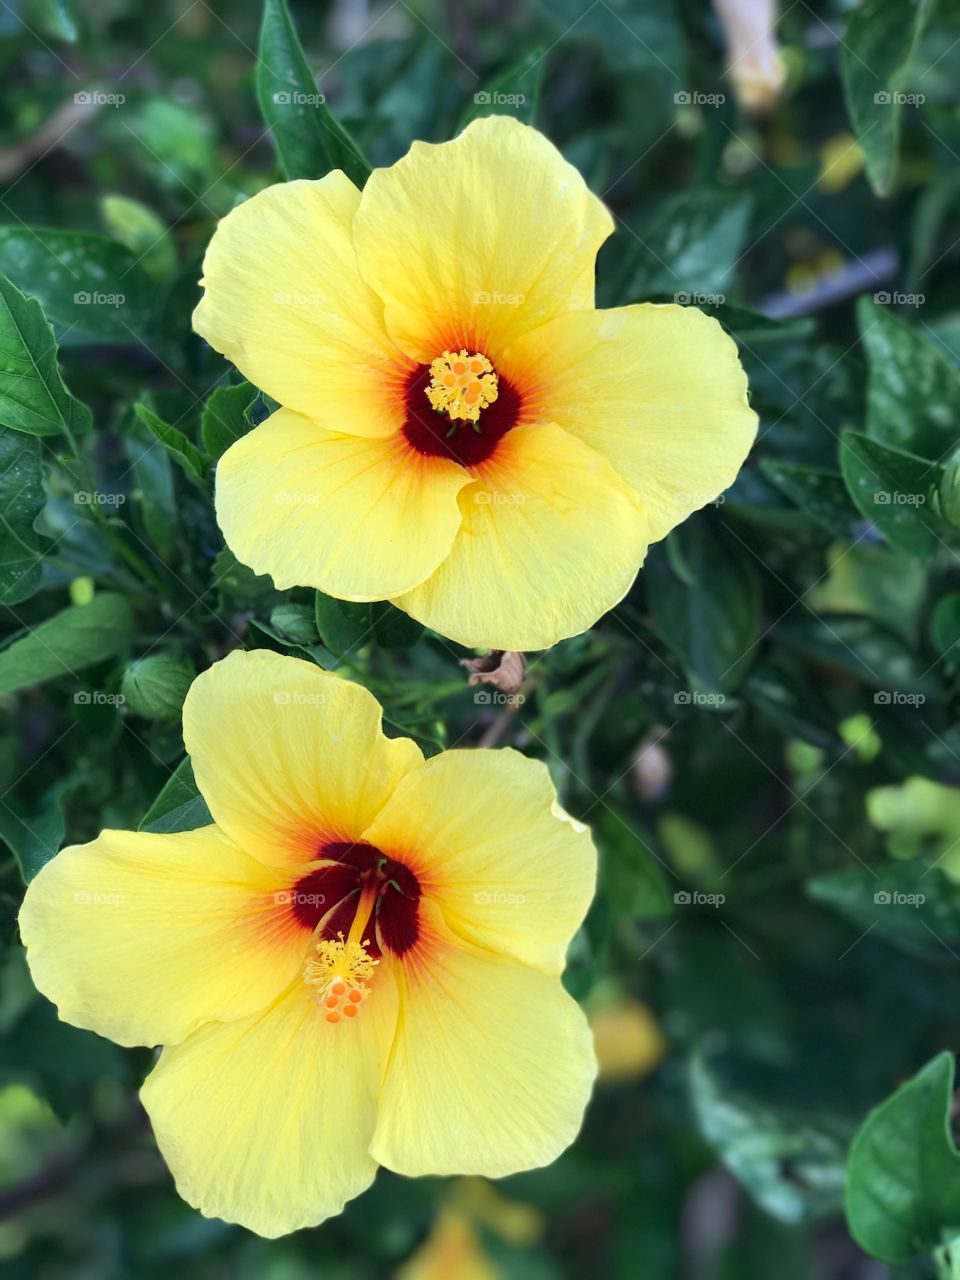 Flowers in Maui